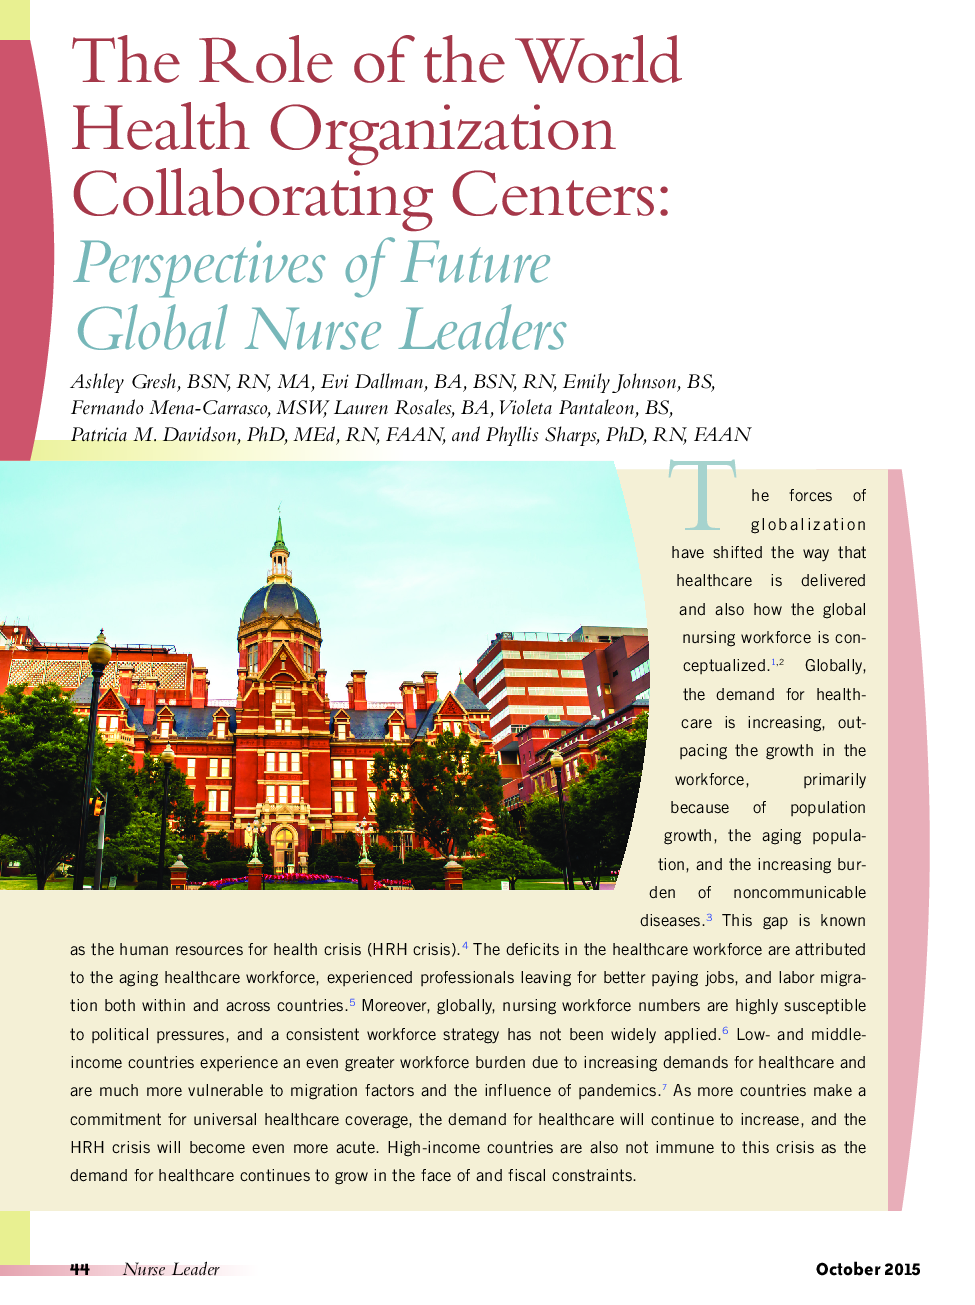 نقش سازمان های همکاری جهانی سازمان بهداشت جهانی: چشم انداز رهبران پرستار جهانی آینده